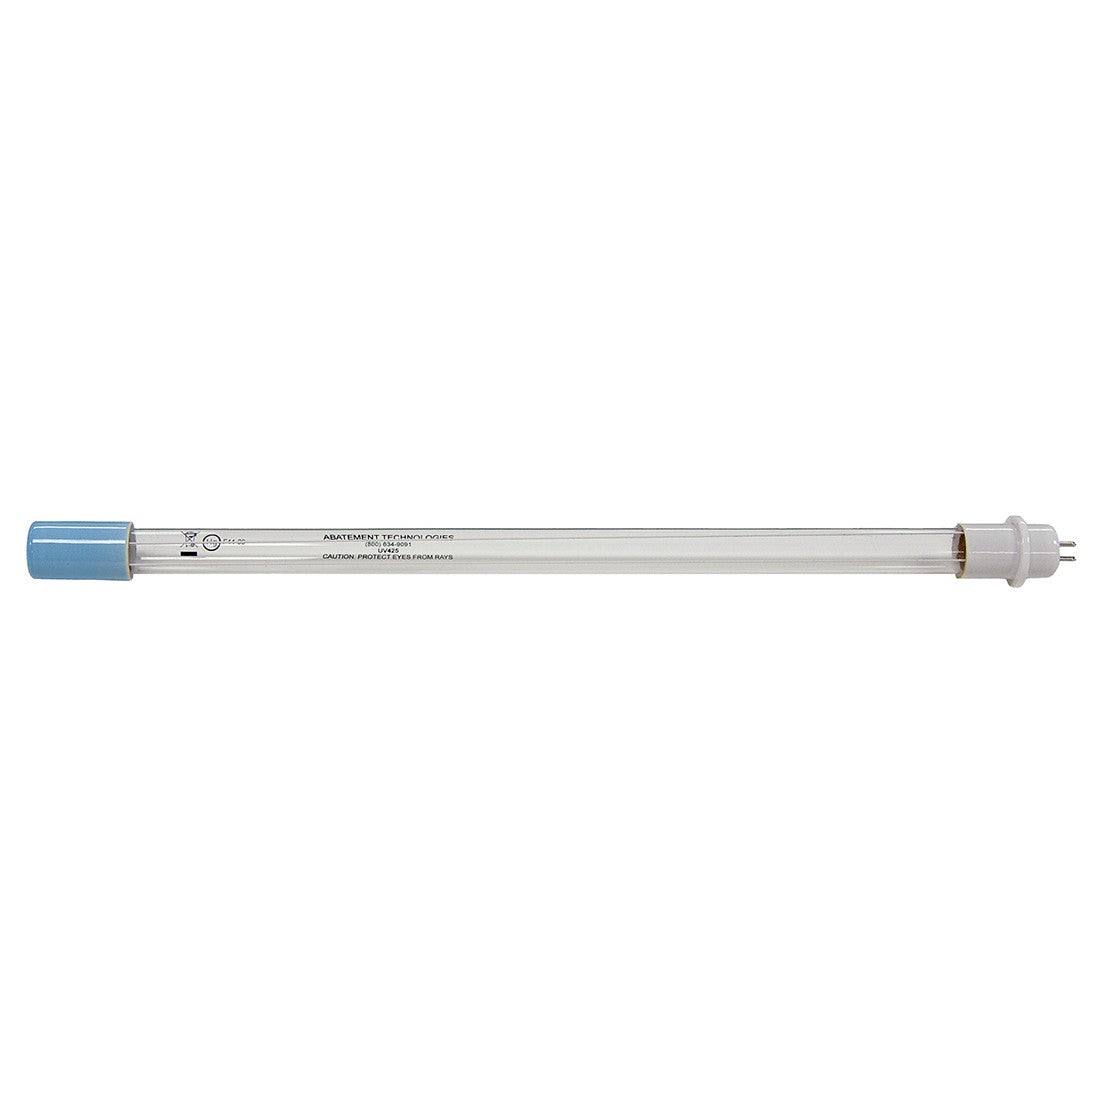 Abatement Technologies UV415 UV Lamp for PRED1200UV Air Scrubber - 2 Pack